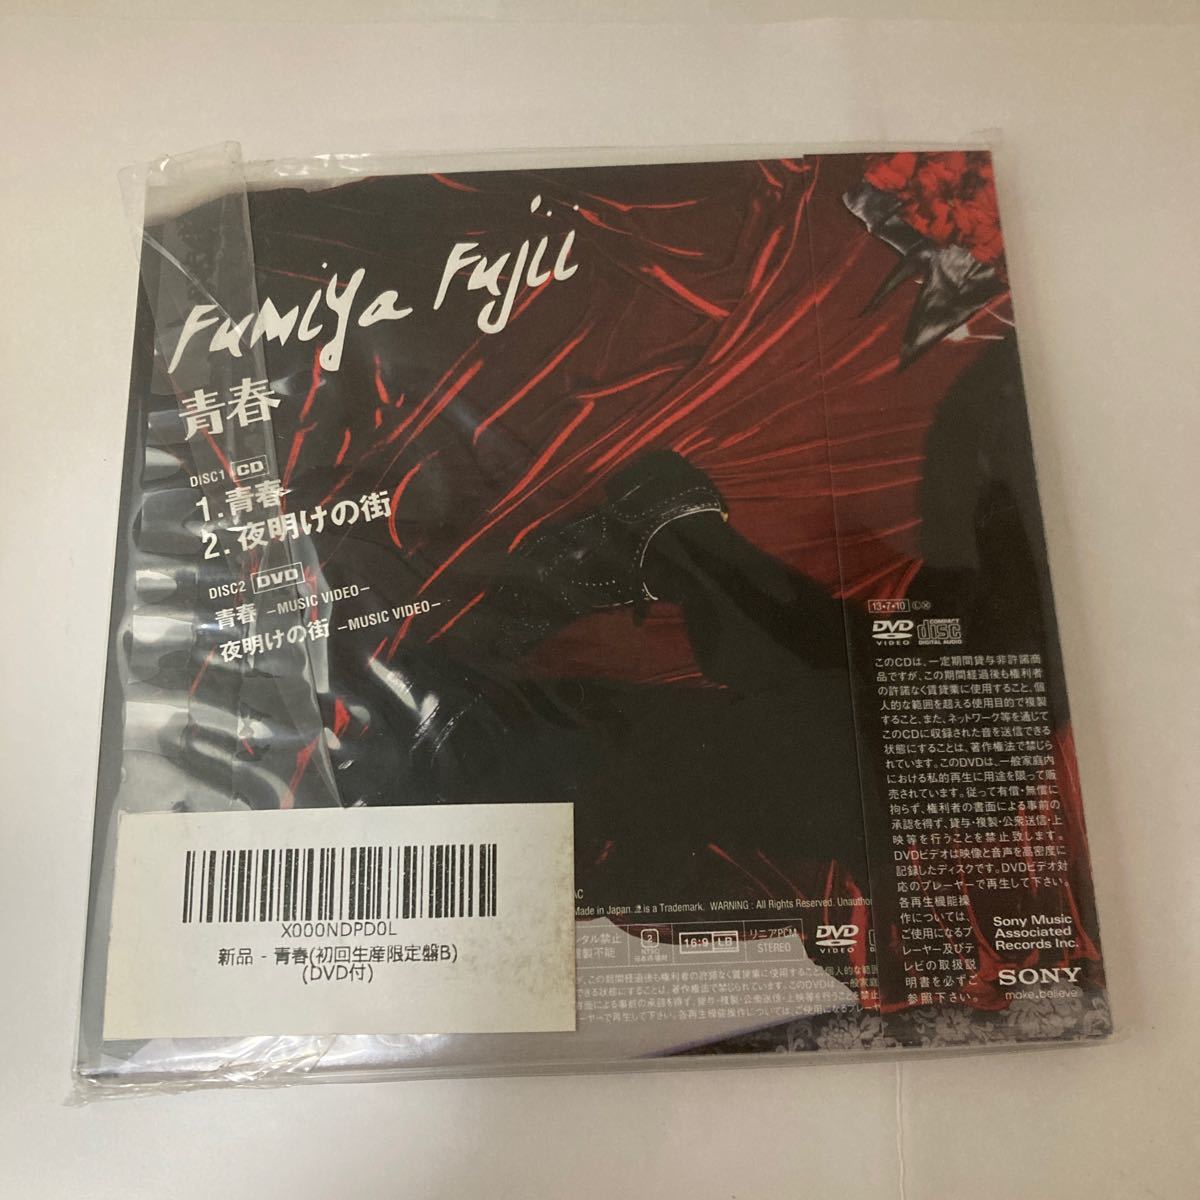  нераспечатанный CD юность ( первый раз производство ограничение запись B) (DVD есть ) Fujii Fumiya SMAR изначальный The Checkers 